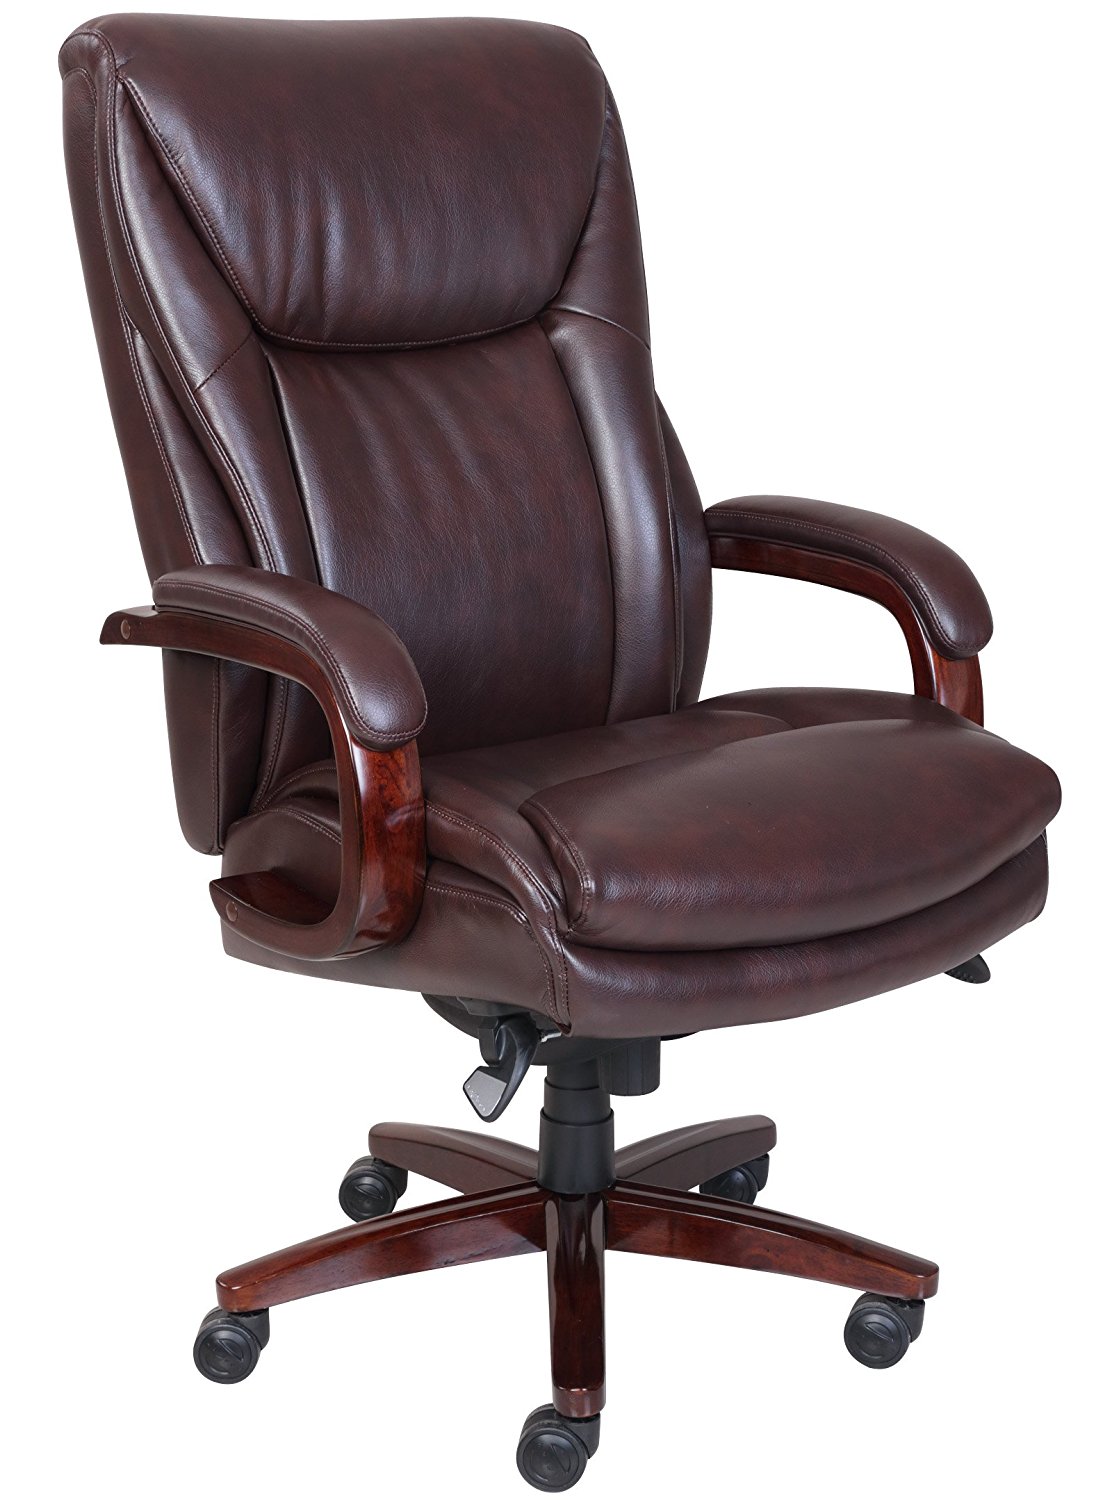 Executive Leather Desk Chair - Decor IdeasDecor Ideas